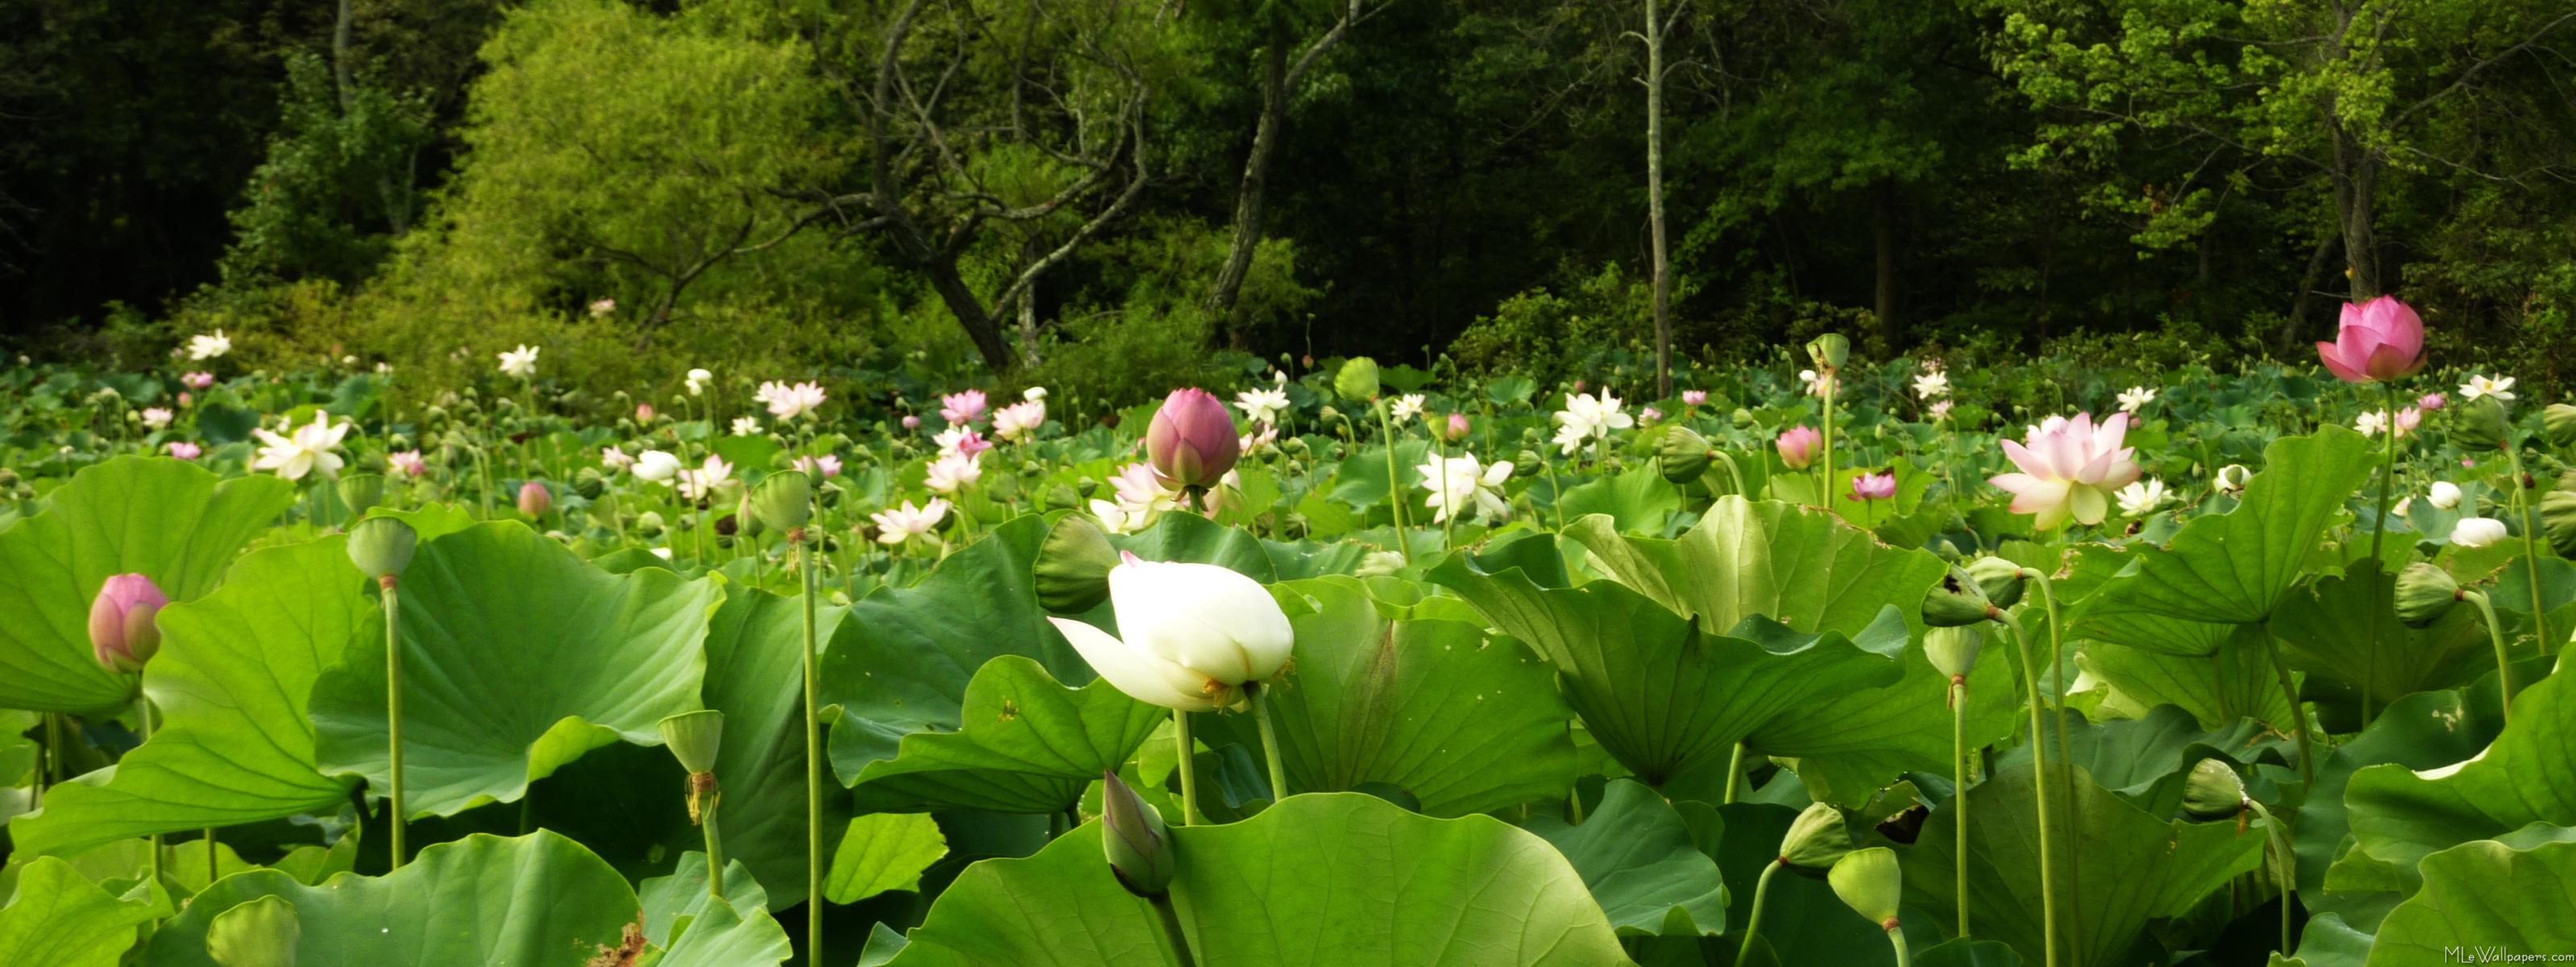  - Field of Lotus Flowers